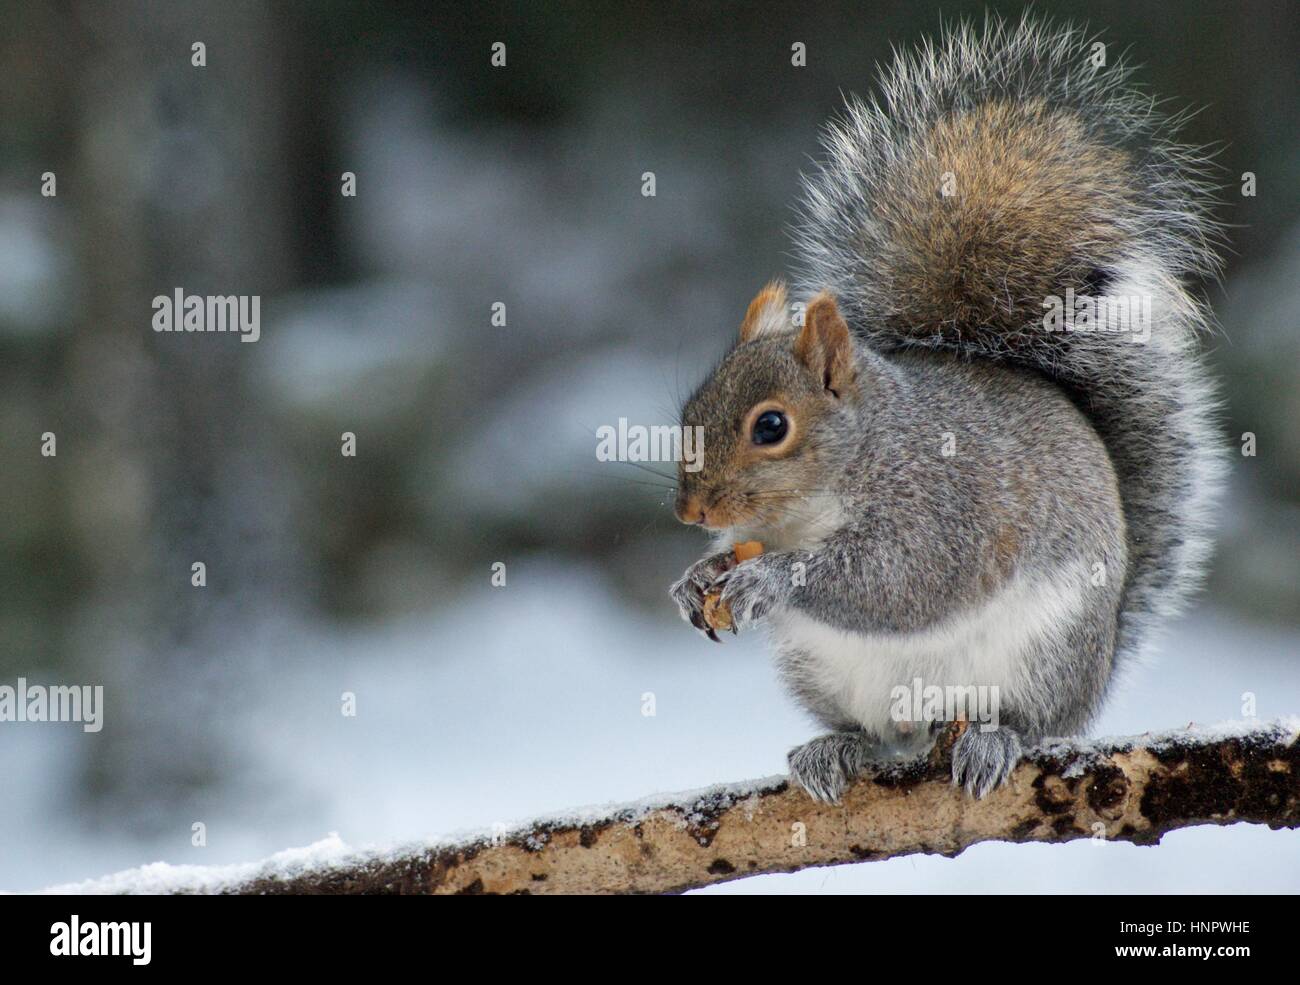 Un écureuil gris assis sur une branche en hiver manger une noix Banque D'Images